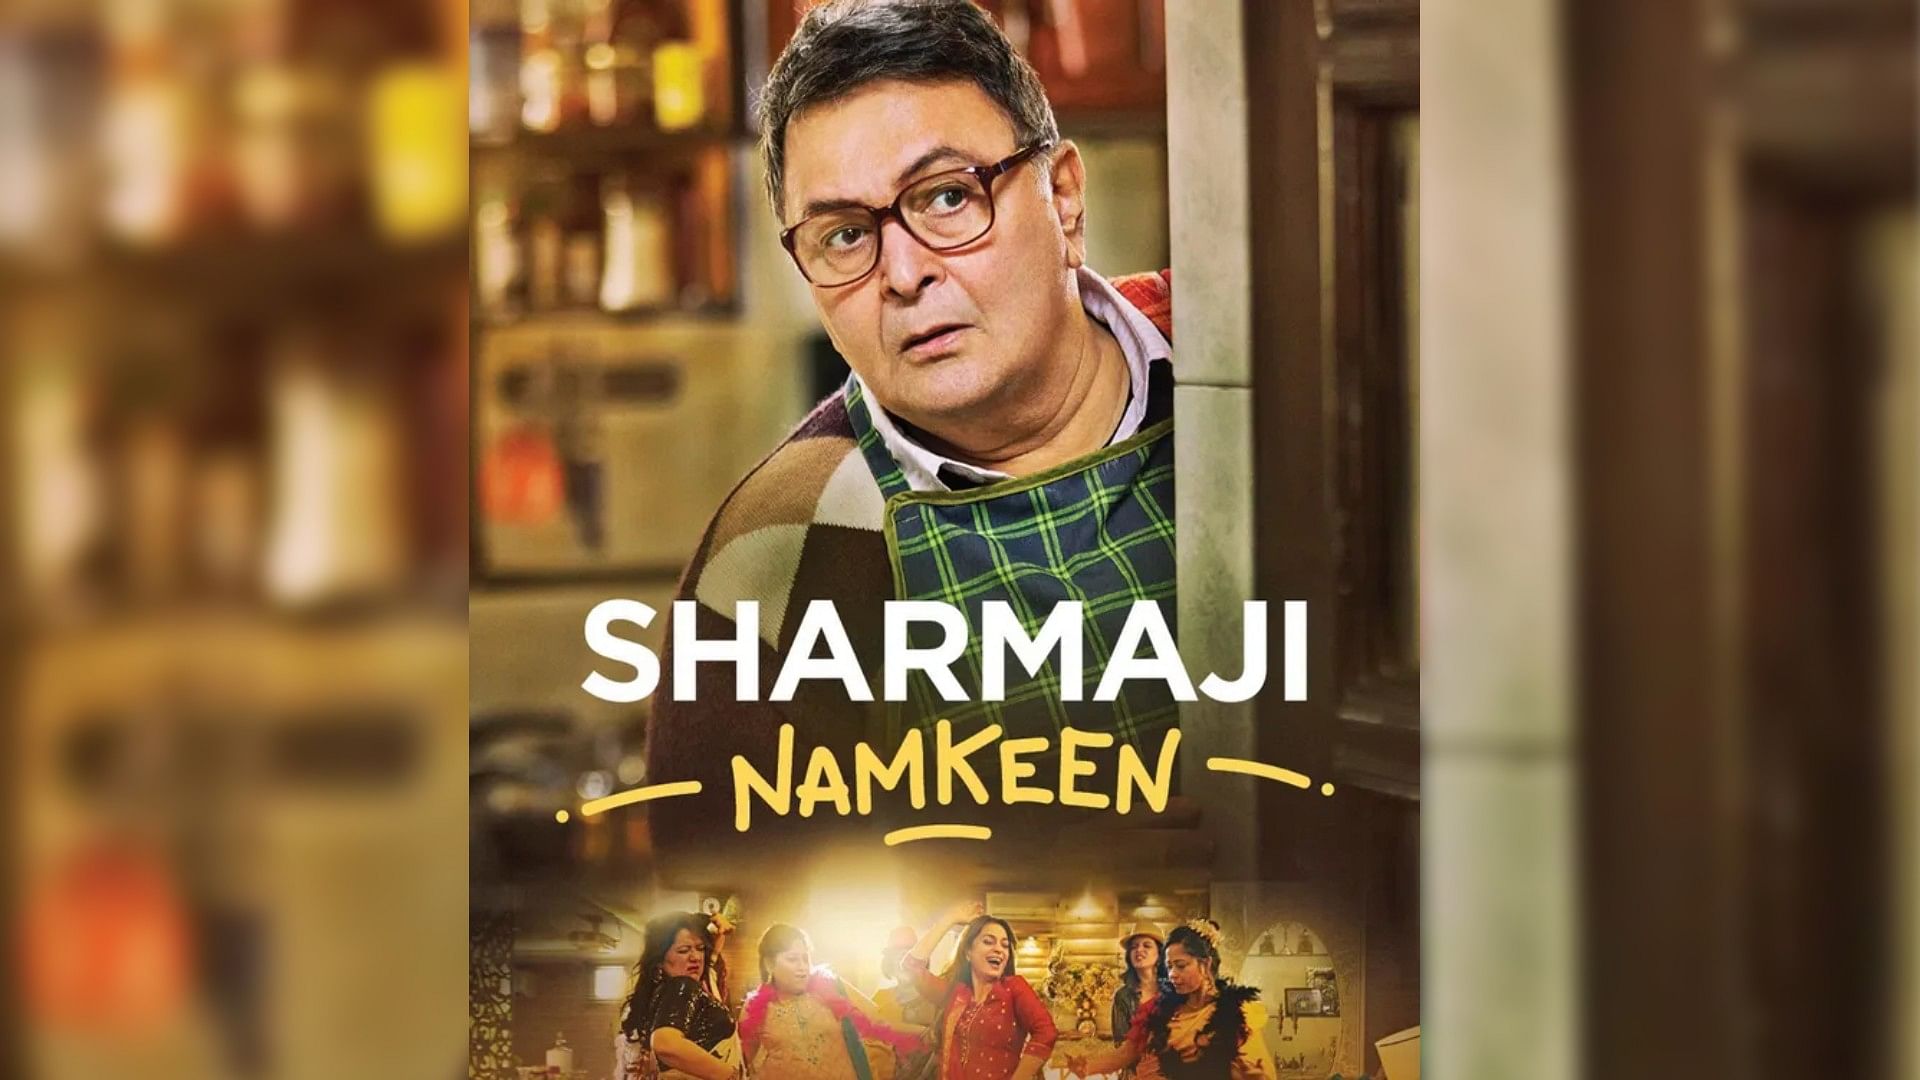 Sharmaji Namkeen Review: जिंदगी तीखी नहीं नमकीन होनी चाहिए, जाते जाते दुनिया  को सिखा गए ऋषि कपूर - Entertainment News: Amar Ujala